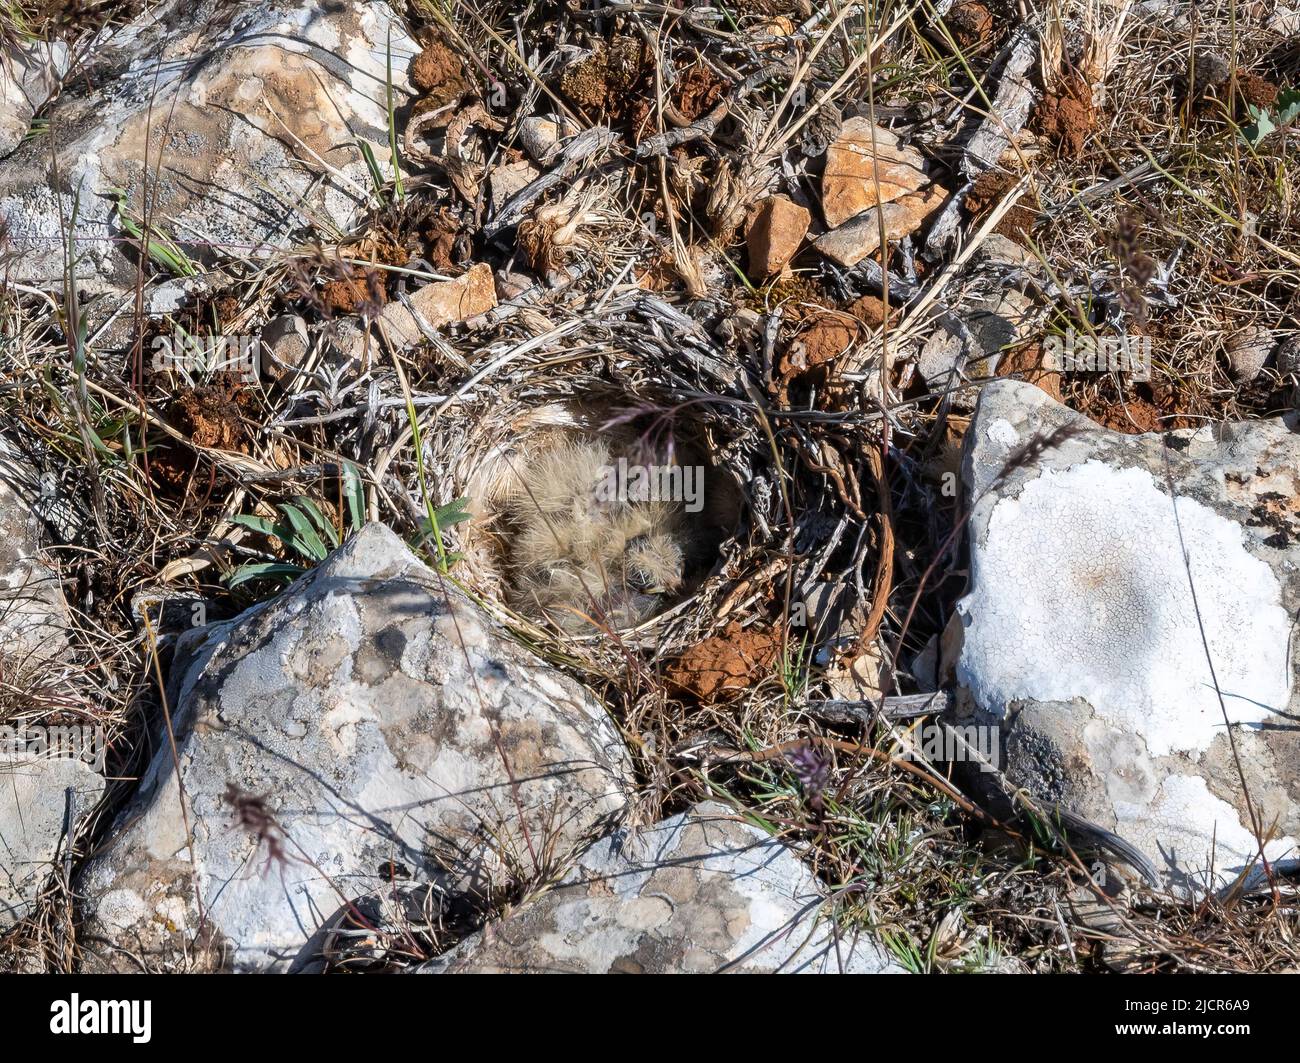 Un nid d'oiseau avec de minuscules poussins sur le sol rocailleux. Gaziantep, Türkiye. Banque D'Images